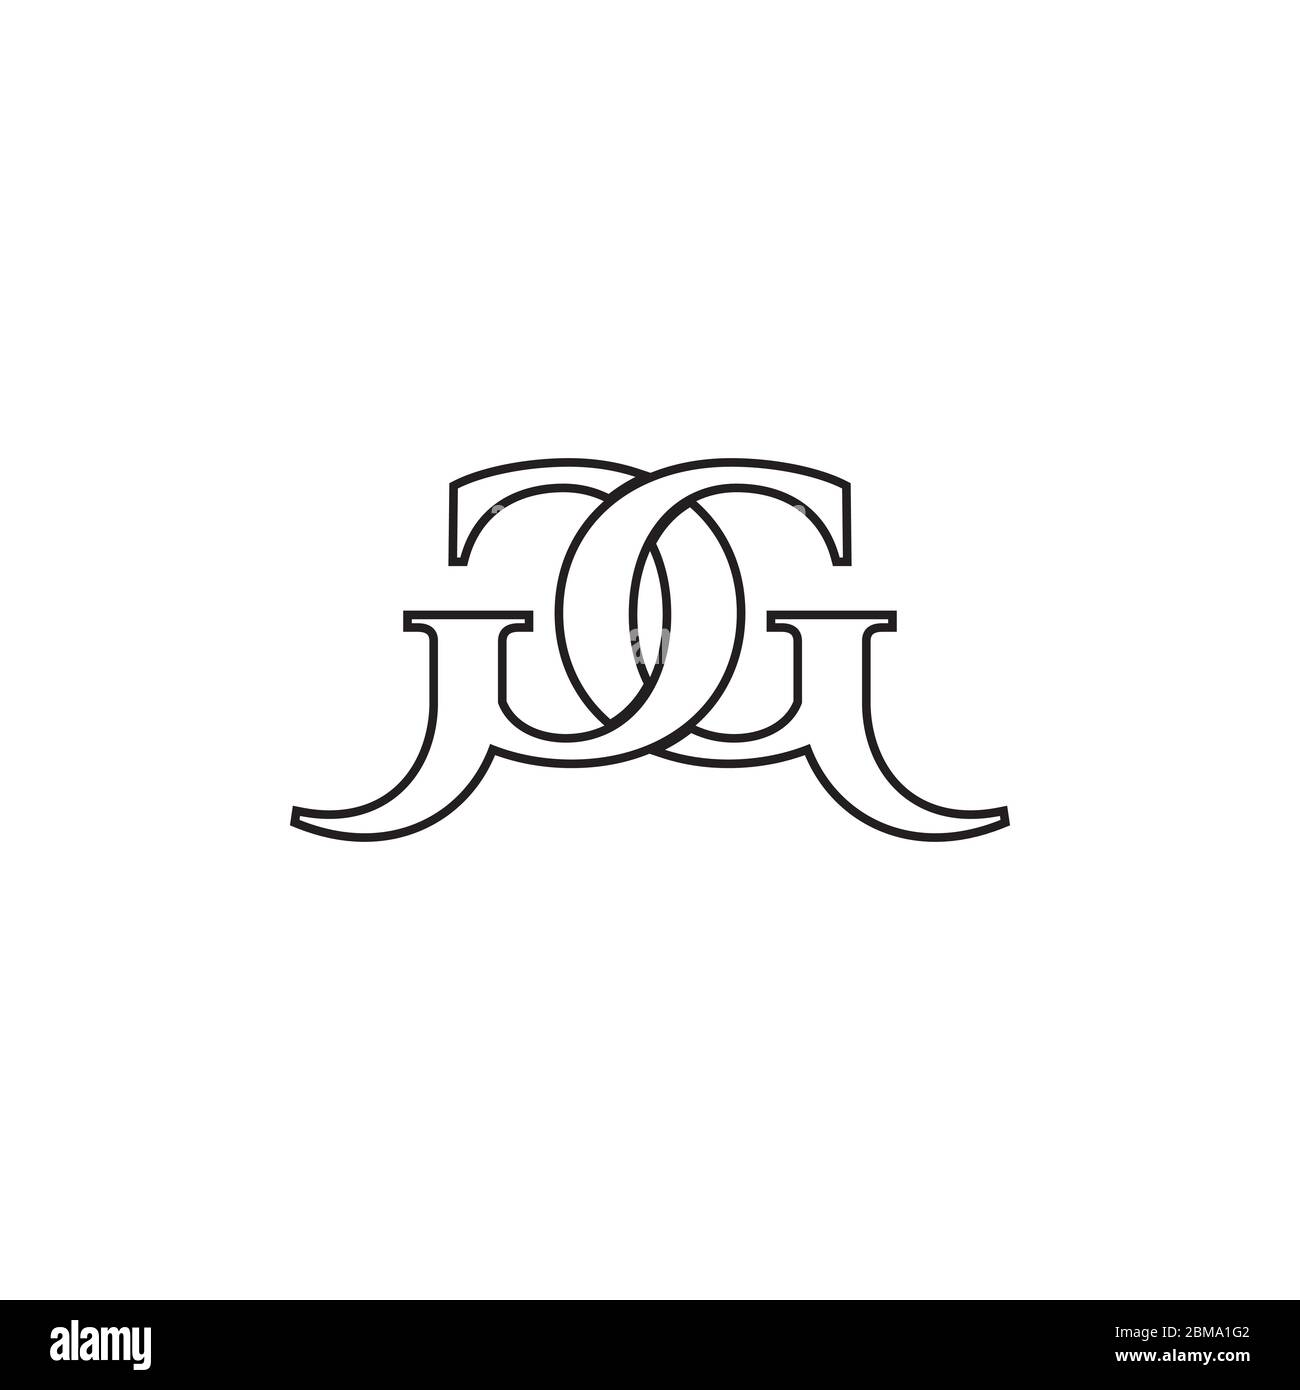 G vettore di disegno del logo della lettera delle linee G. Illustrazione Vettoriale